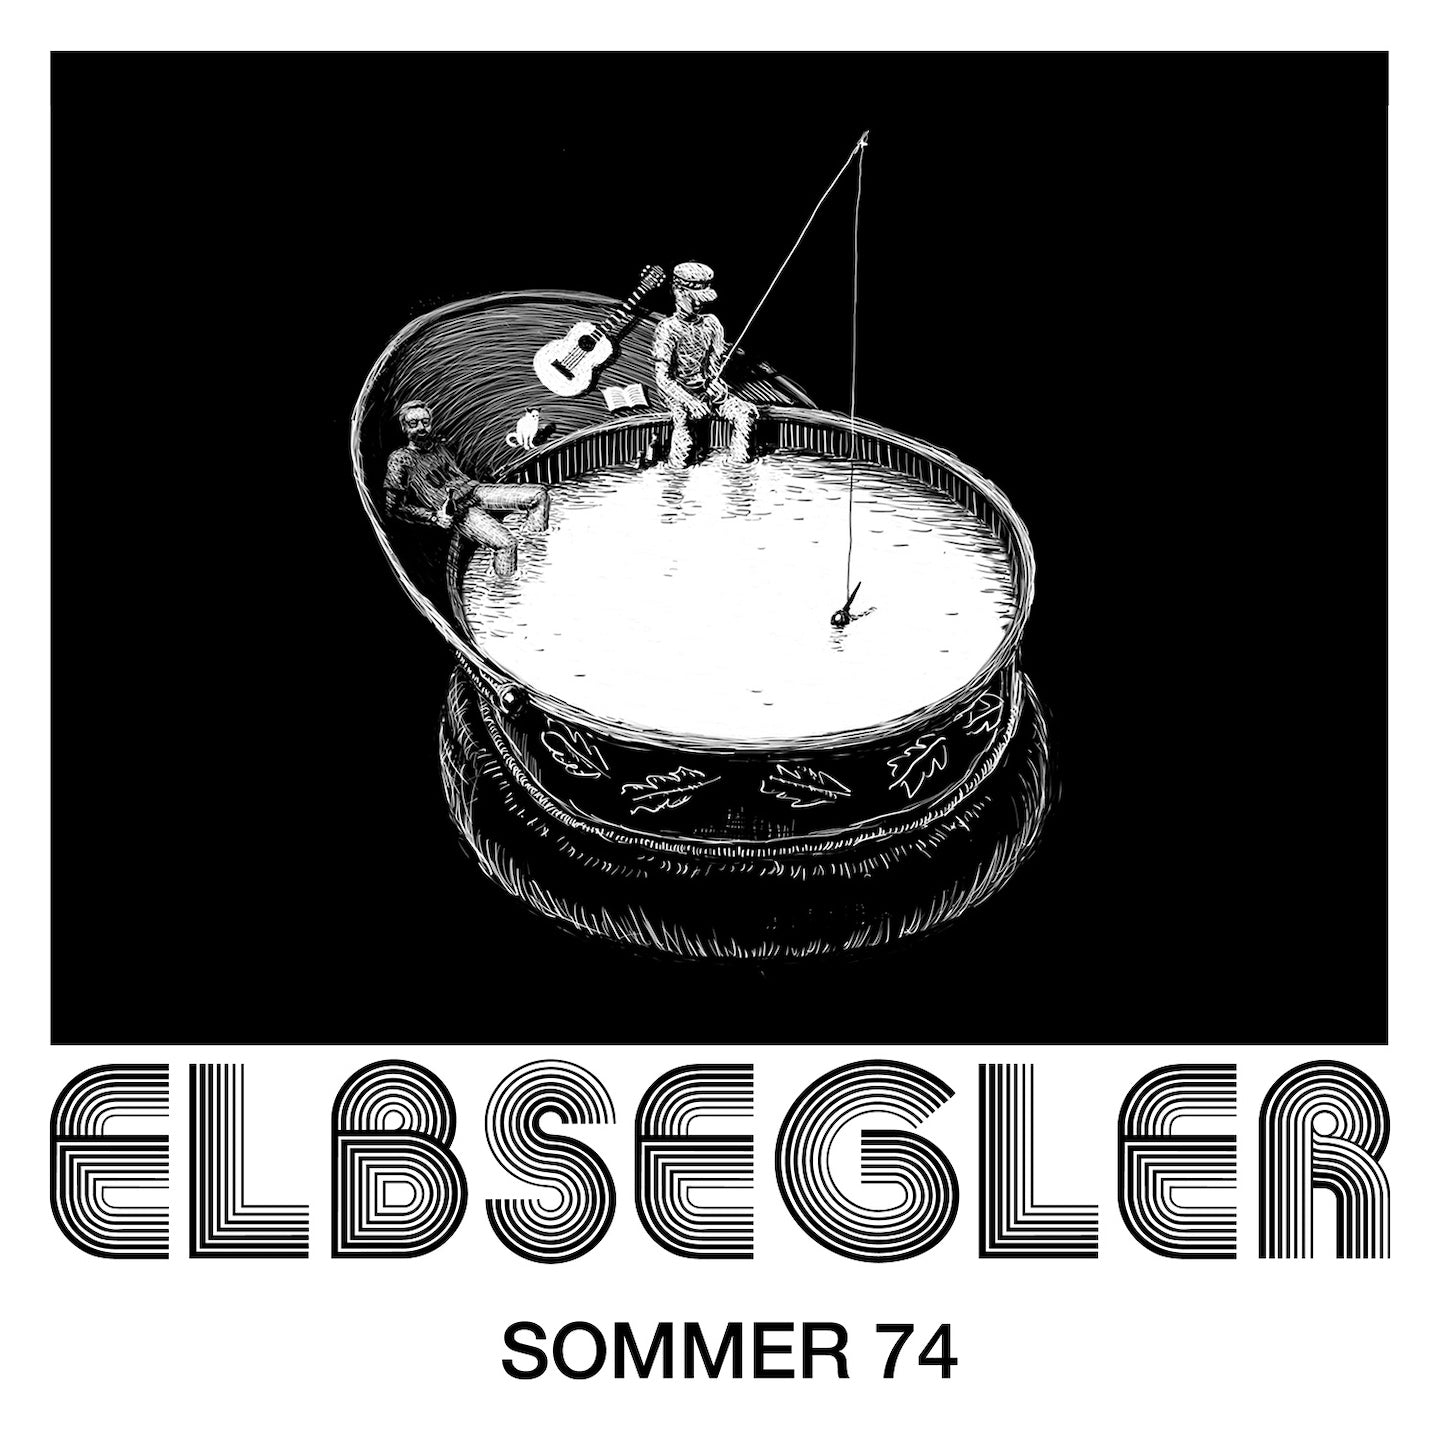 ELBSEGLER - Sommer 74 (CD)